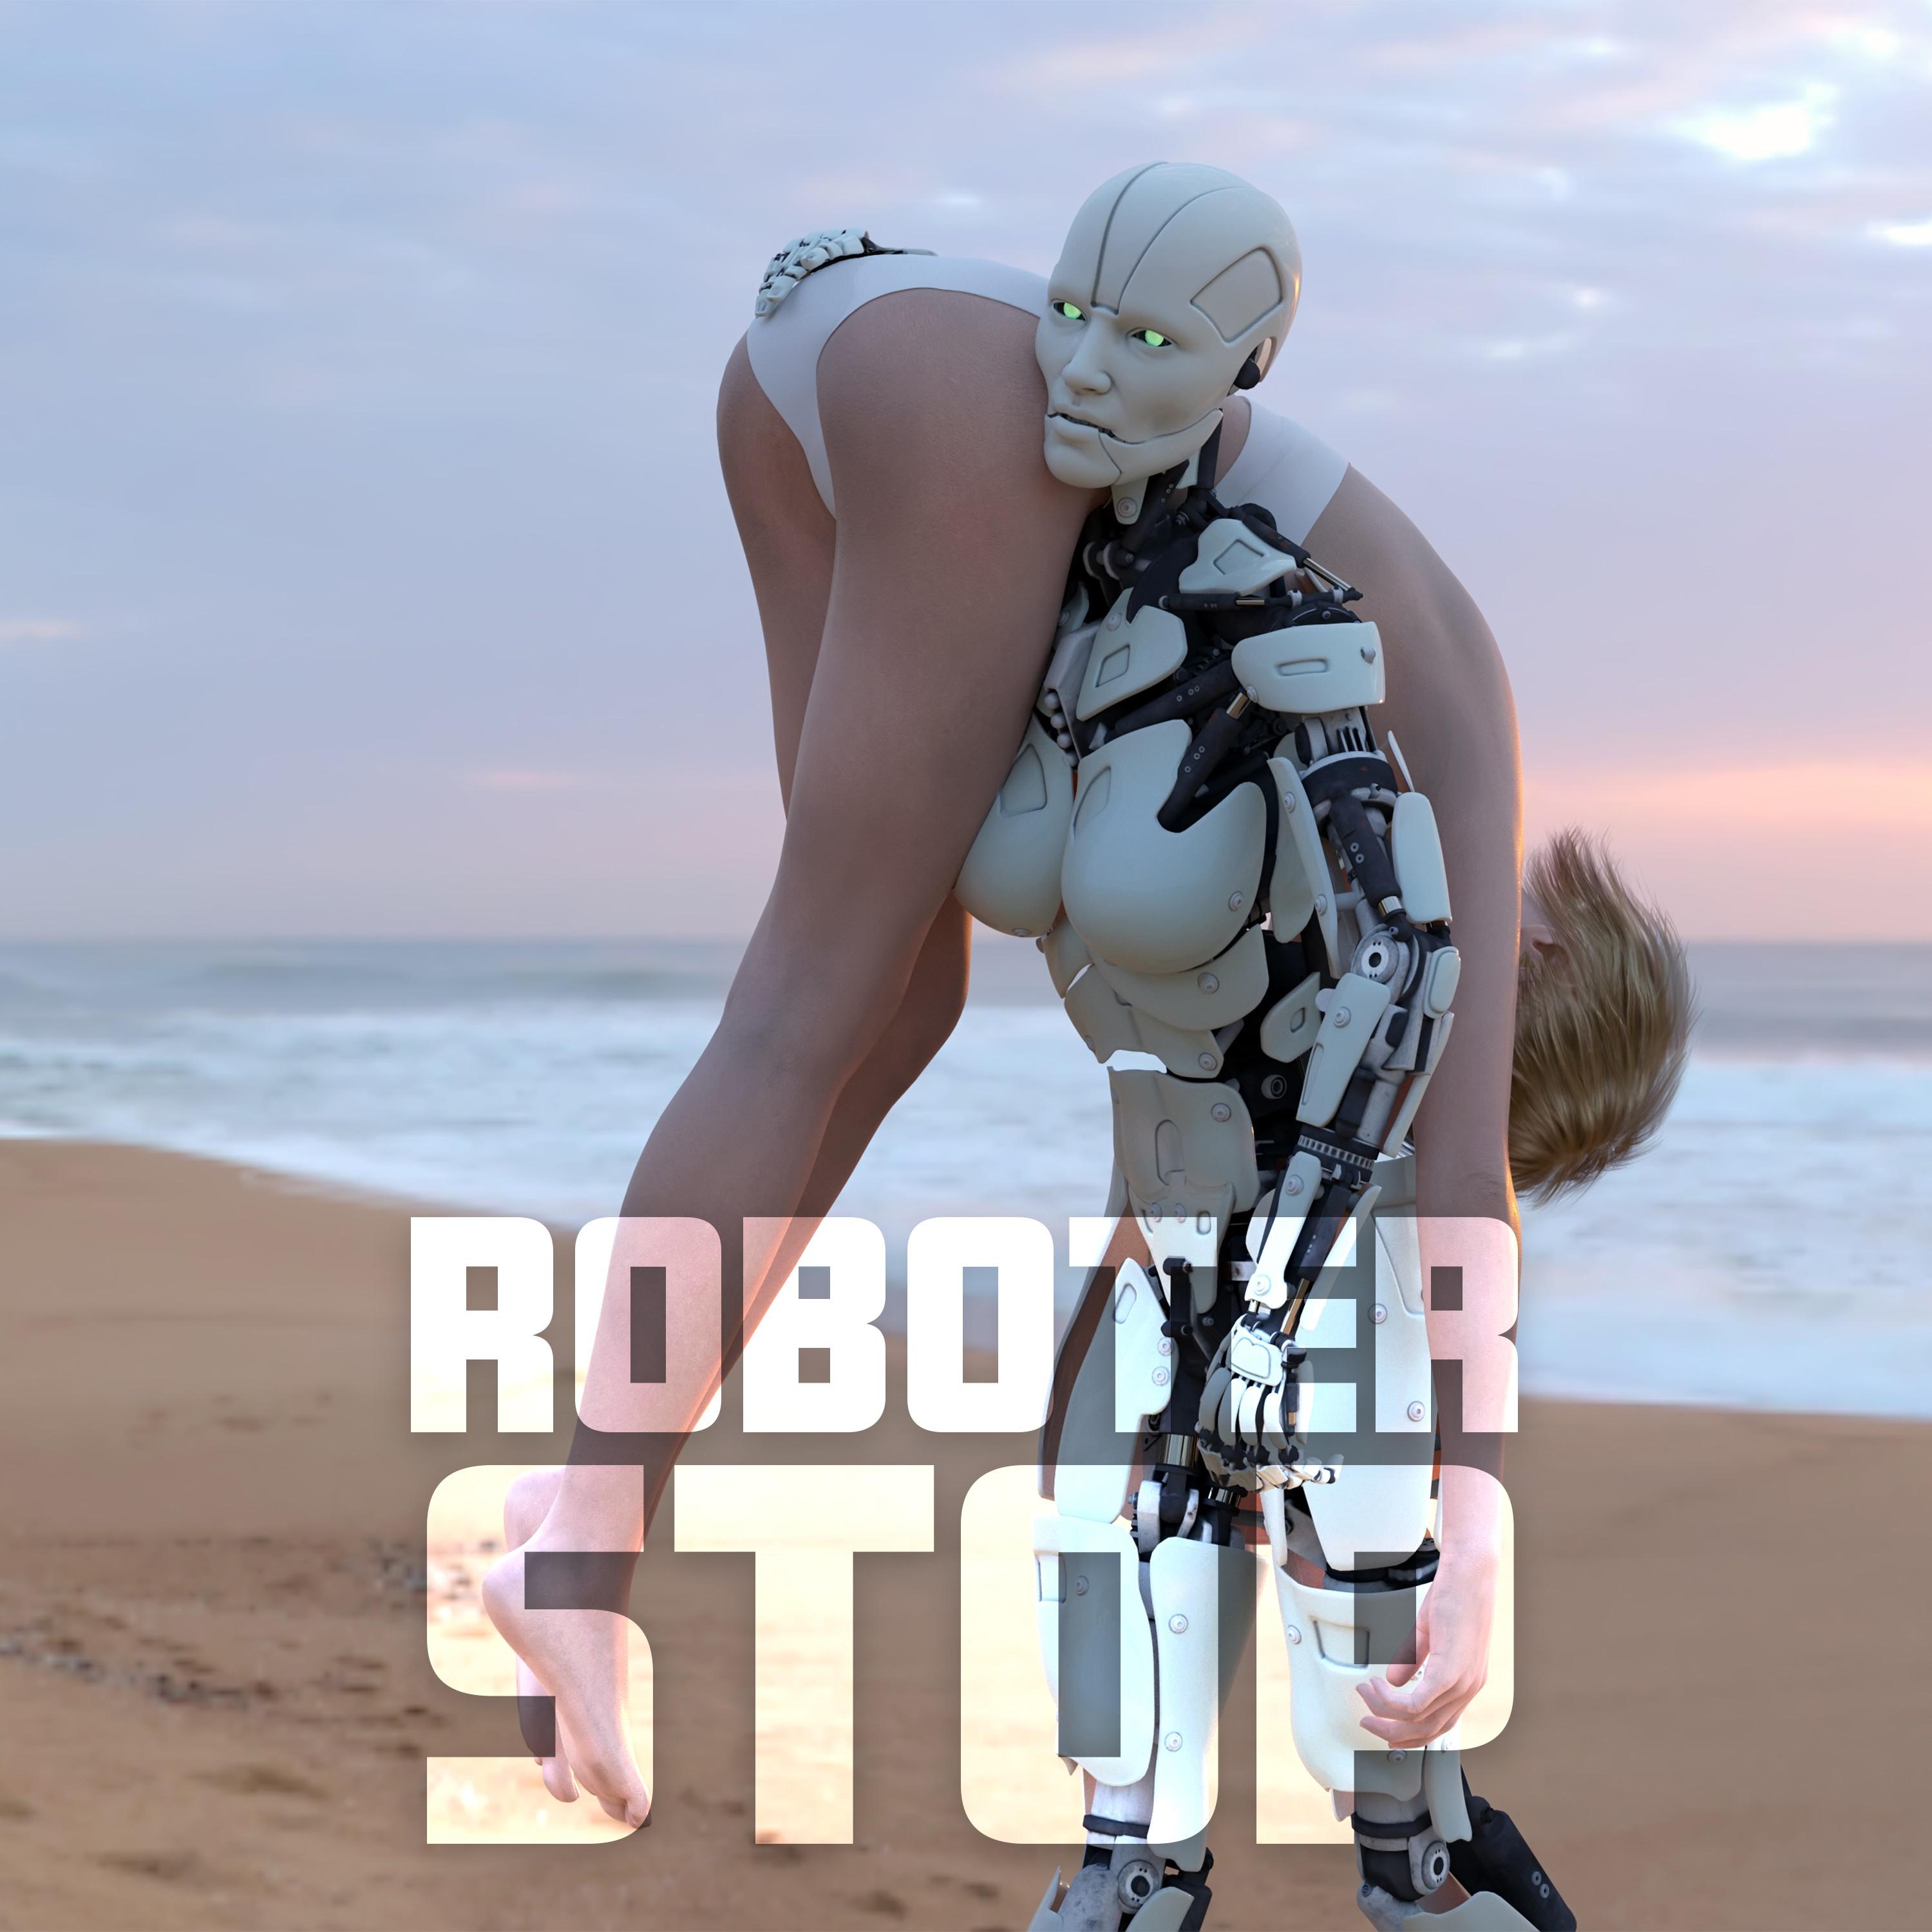 Roboter - Stop War